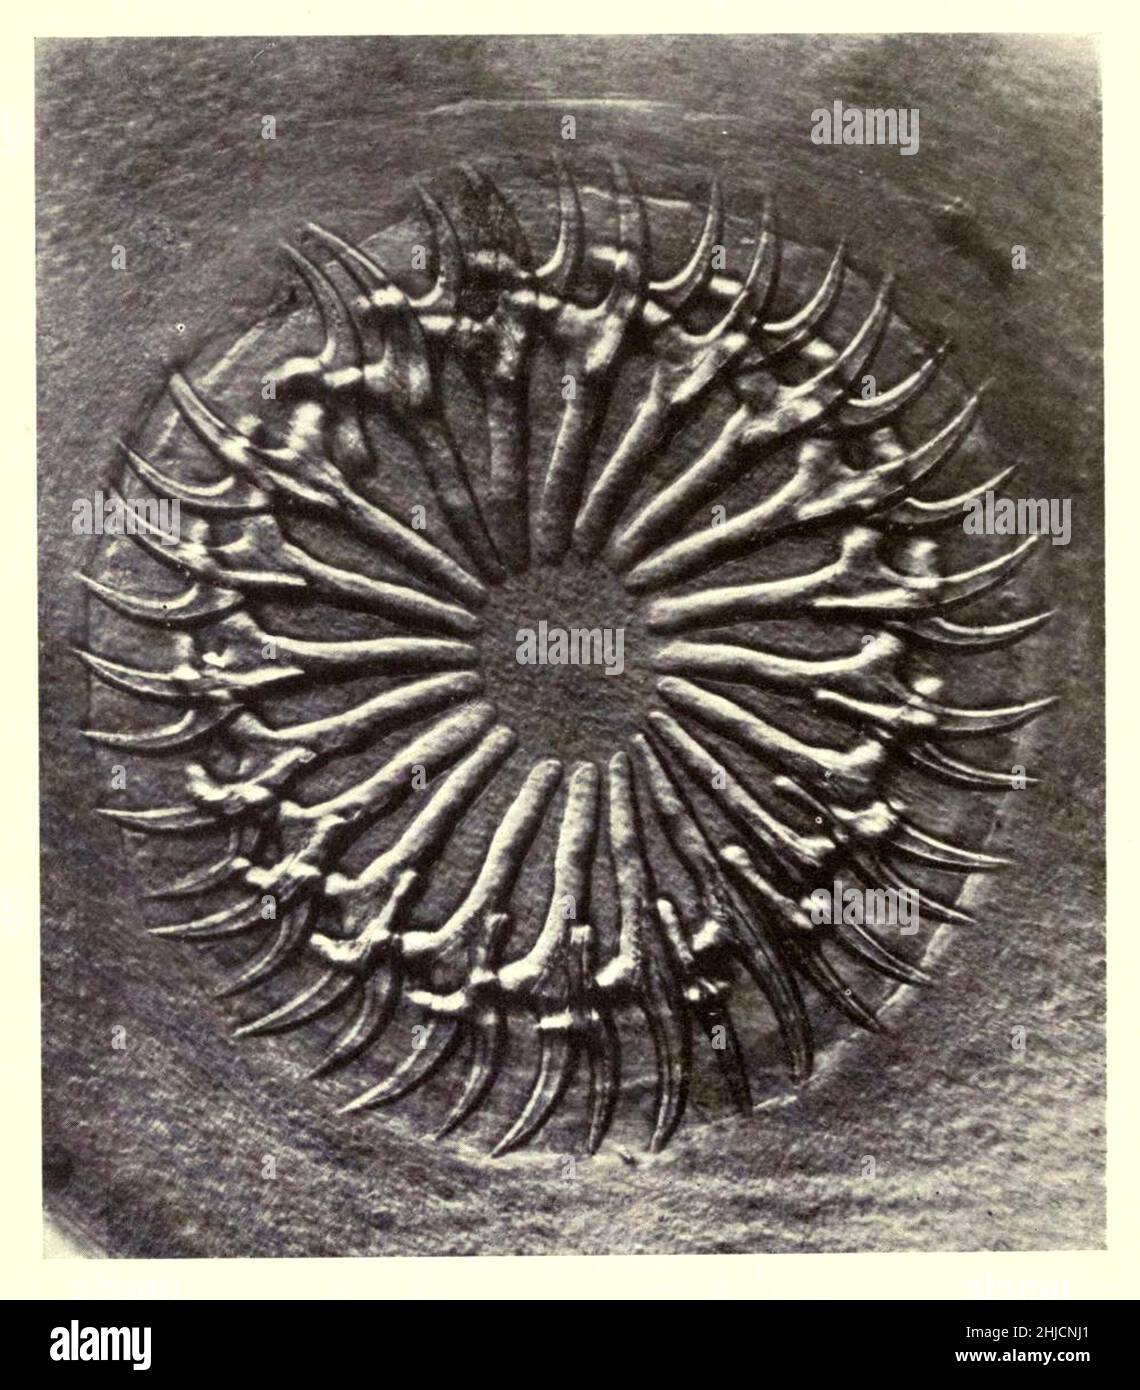 Kreis von Haken an einem Scolex (das vordere, kopfartige Segment eines Bandwurms, das Saugnäpfe oder Haken für die Befestigung hat). Vergrößerung: 150x. Fotomikrograph von Arthur E Smith in den frühen 1900er Jahren, mit einem kombinierten Mikroskop und Kamera. 1904 stellte die Royal Society in London eine Reihe von Smiths Fotomikrographen der Öffentlichkeit aus. Sie wurden später 1909 in einem Buch mit dem Titel "Nature Through Microscope & Camera" veröffentlicht. Sie waren die ersten Beispiele für die Photomikroskopie, die viele je gesehen hatten. Stockfoto